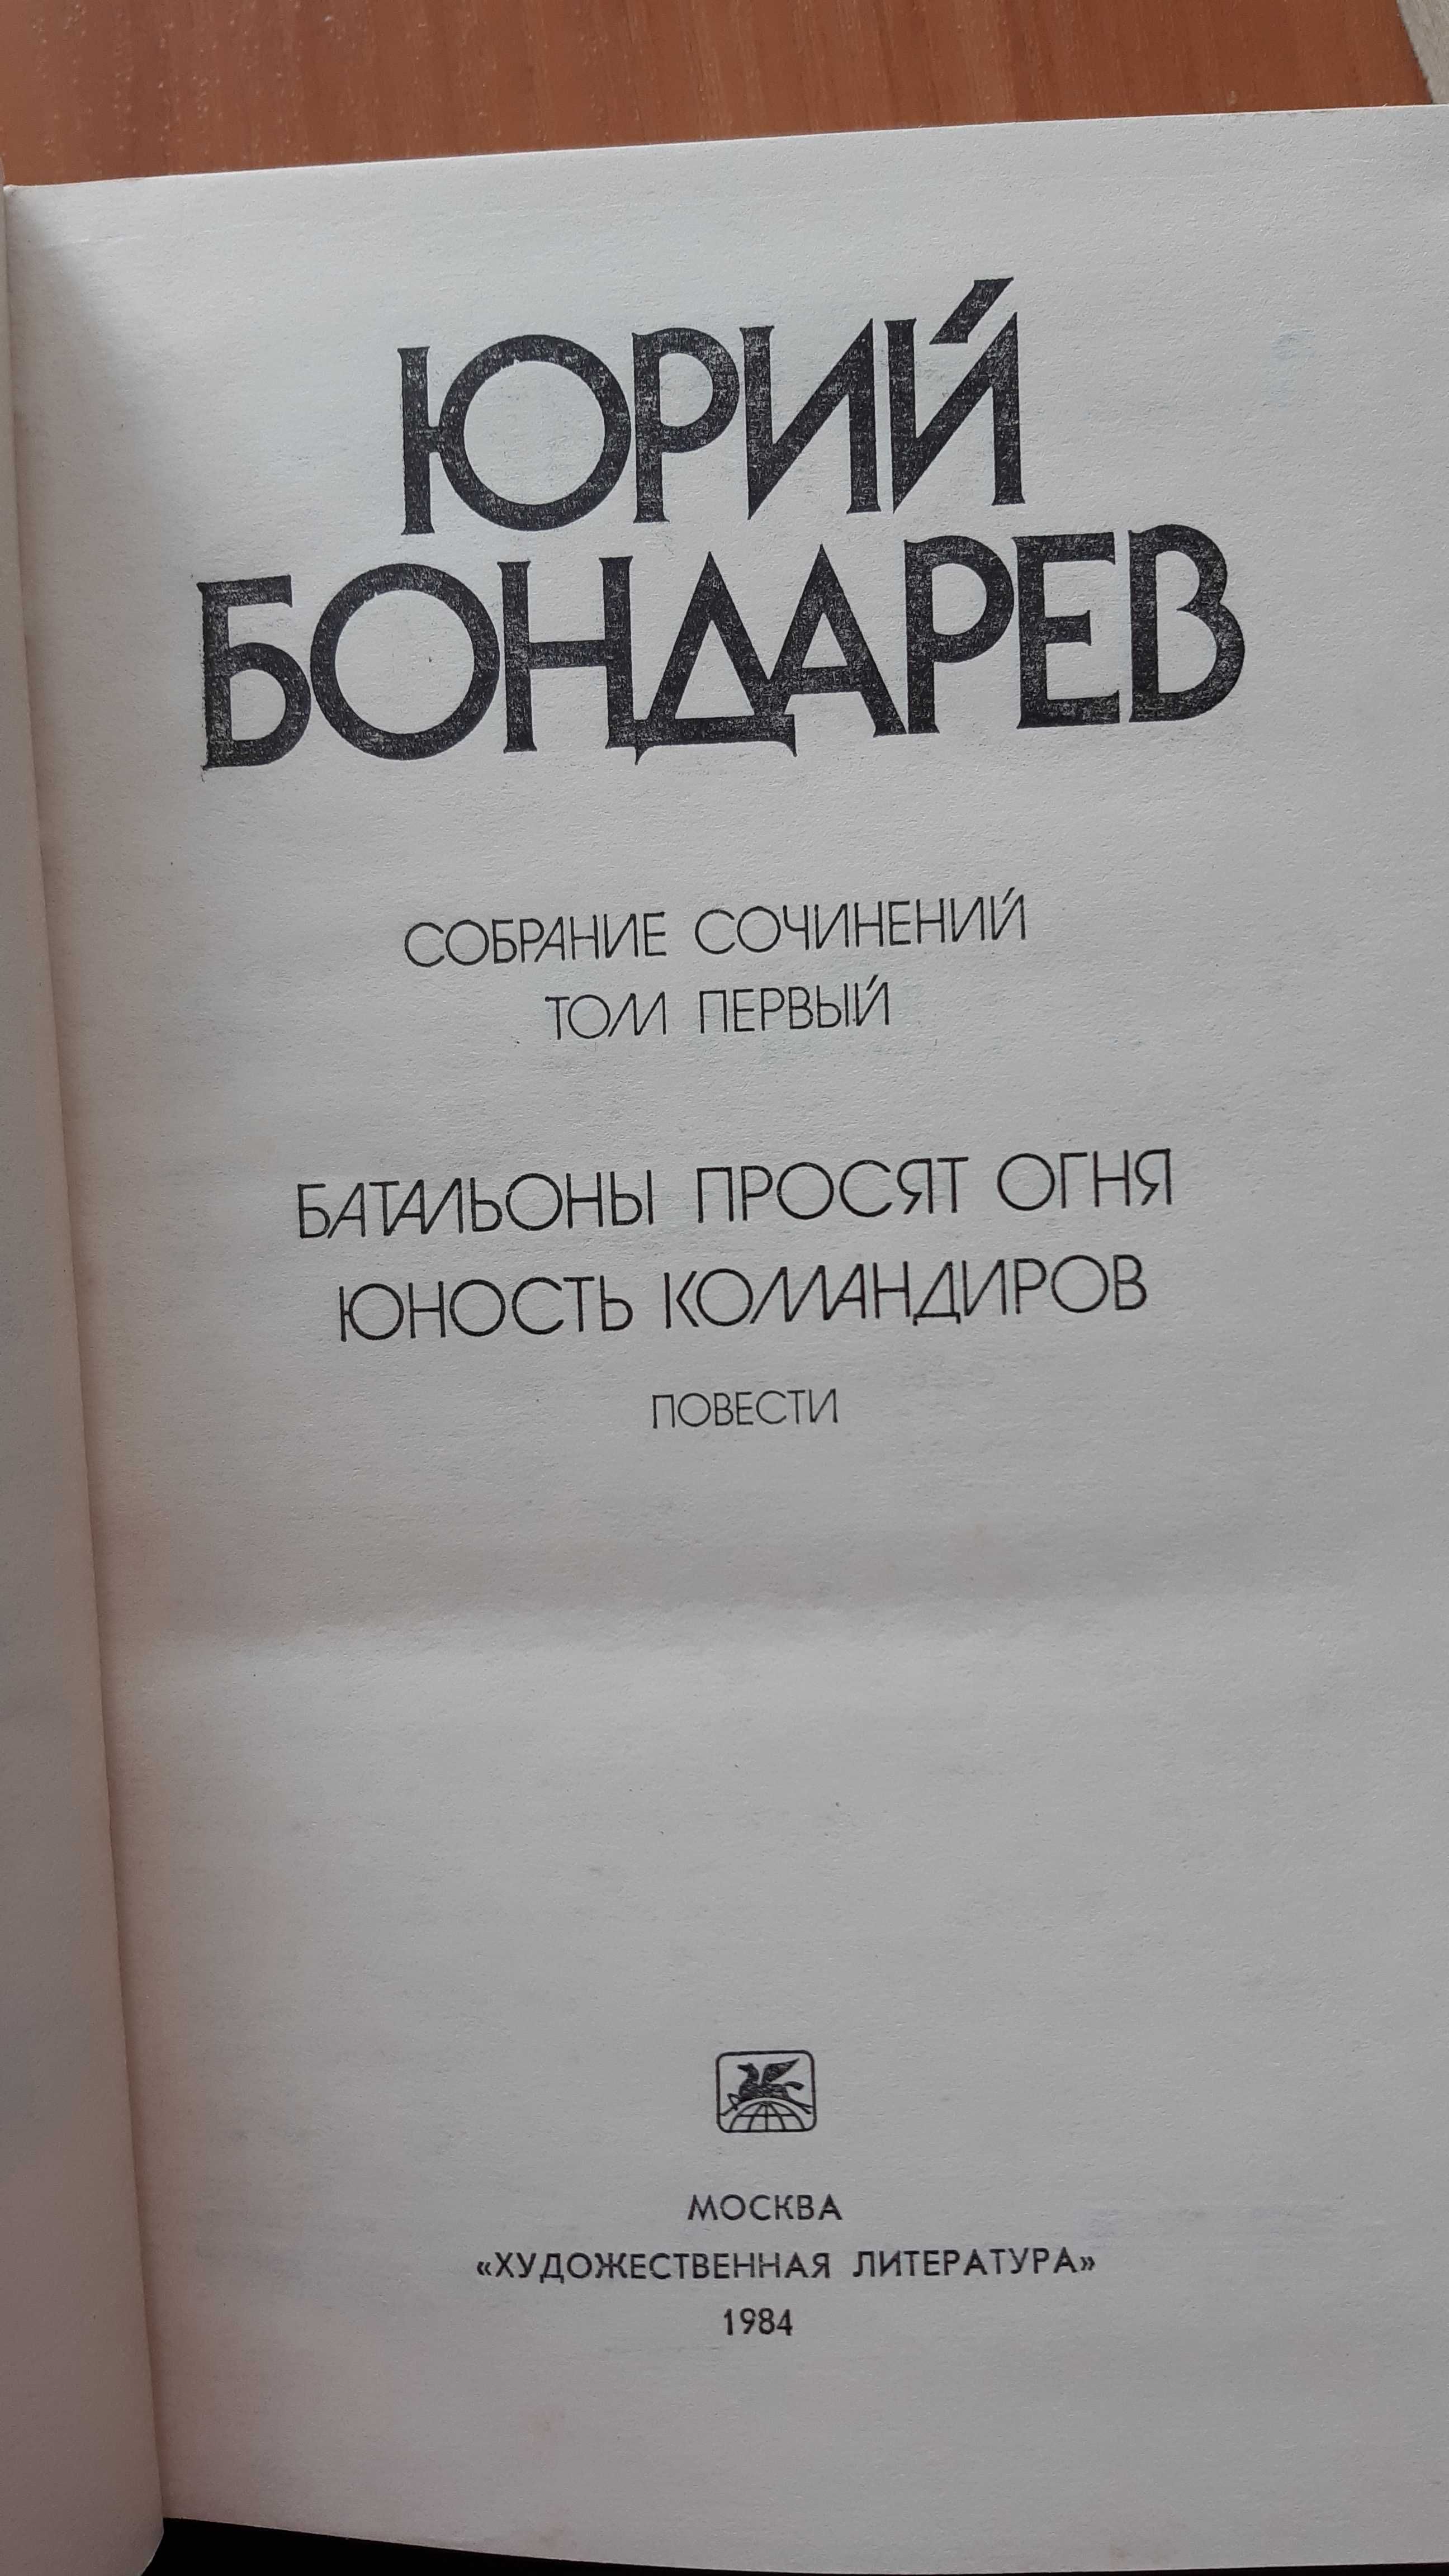 Ю. Бондарев. Собрание сочинений в 6-ти томах.